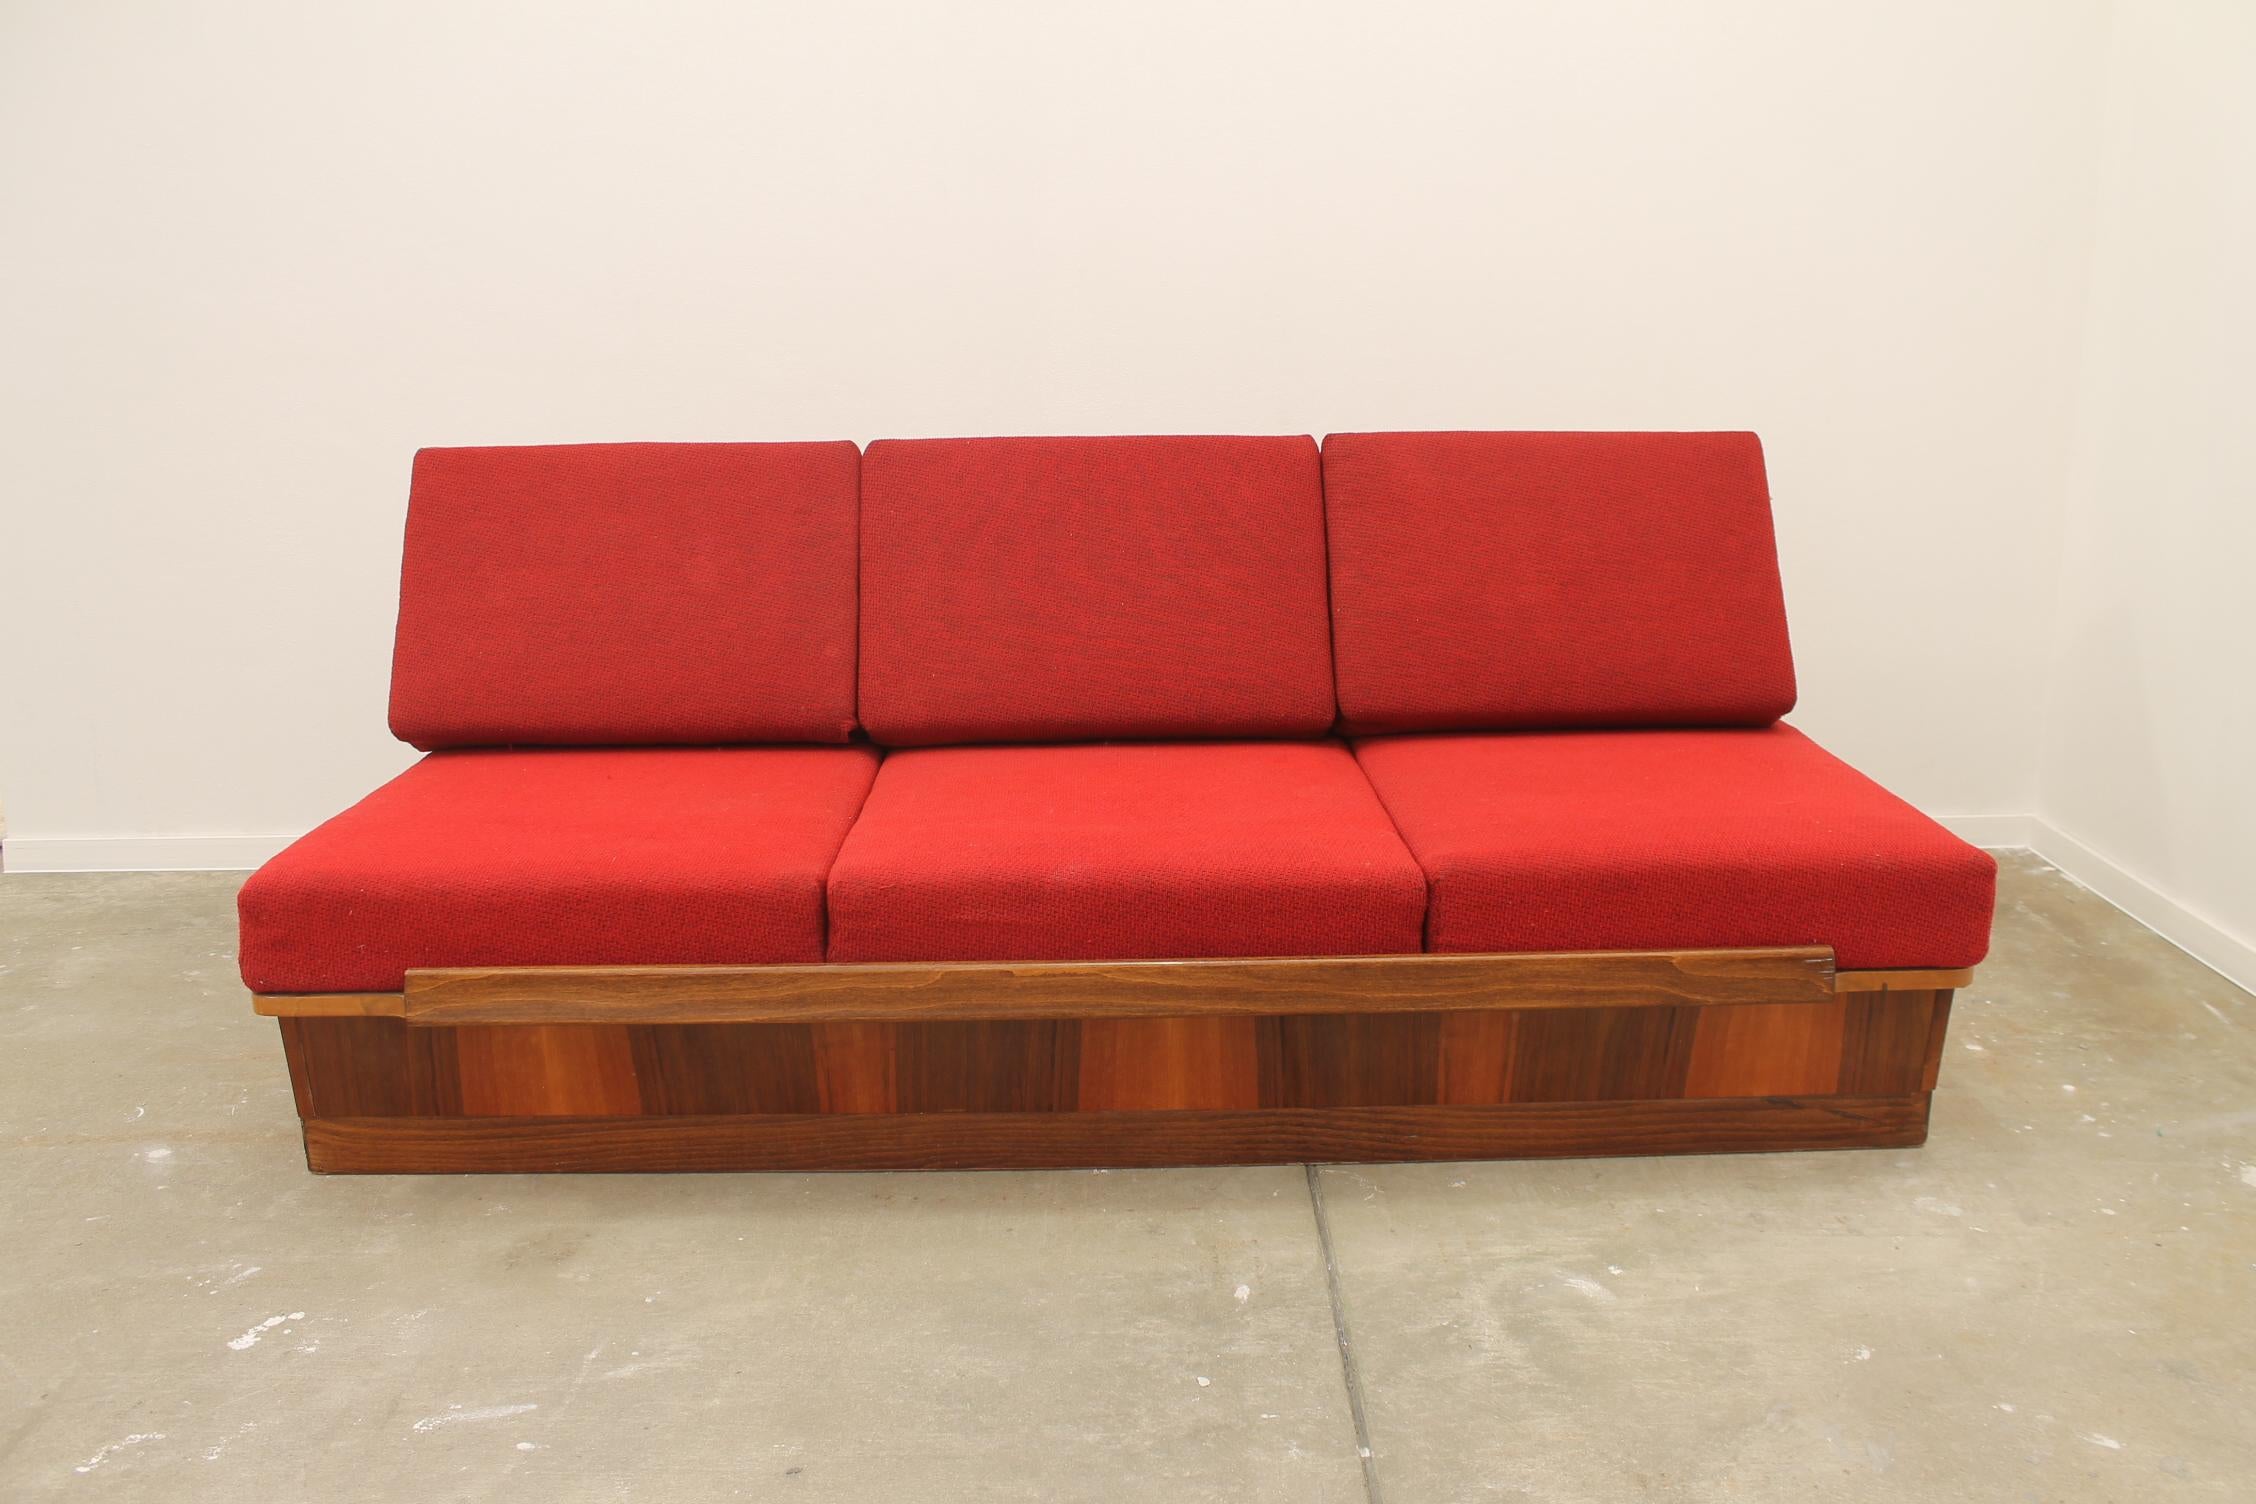 Klappbares Sofabett aus der Mitte des Jahrhunderts, hergestellt von der Firma Mier in der ehemaligen Tschechoslowakei in den 1960er Jahren. Dieses Sofa hat eine Holzstruktur, die mit Nussbaum furniert ist. Das Sofa befindet sich in einem sehr guten